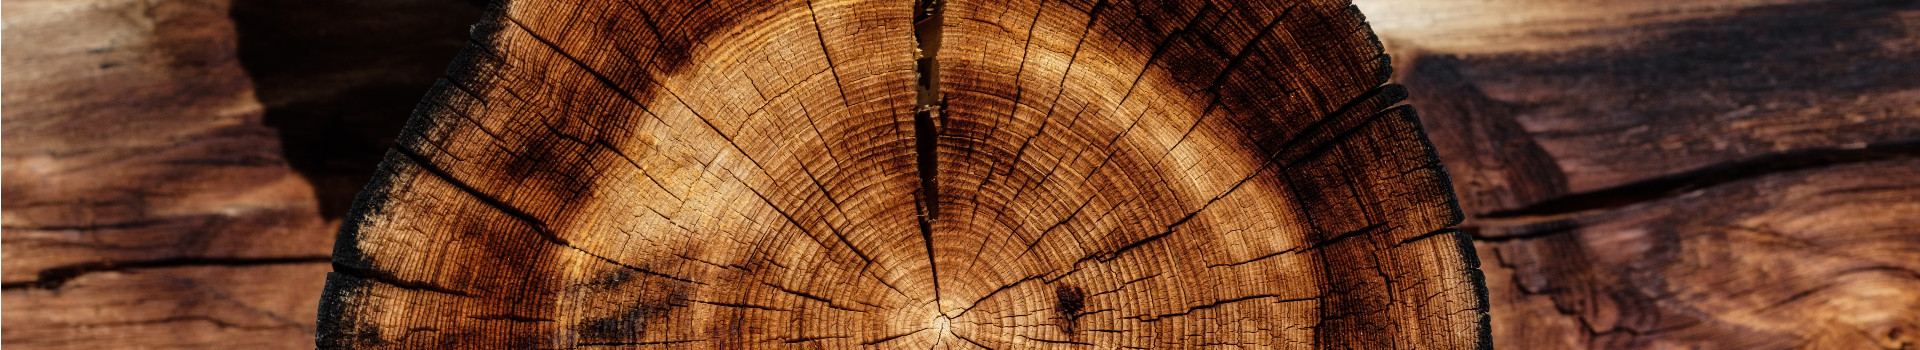 HM Woodwork OÜ tegeleb vanade puit- ja palkmajade renoveerimistöödega, andes neile uue hingamise ning omades aastatepikkuseid kogemusi keeruliste ehitusprojektide lahendamisel.